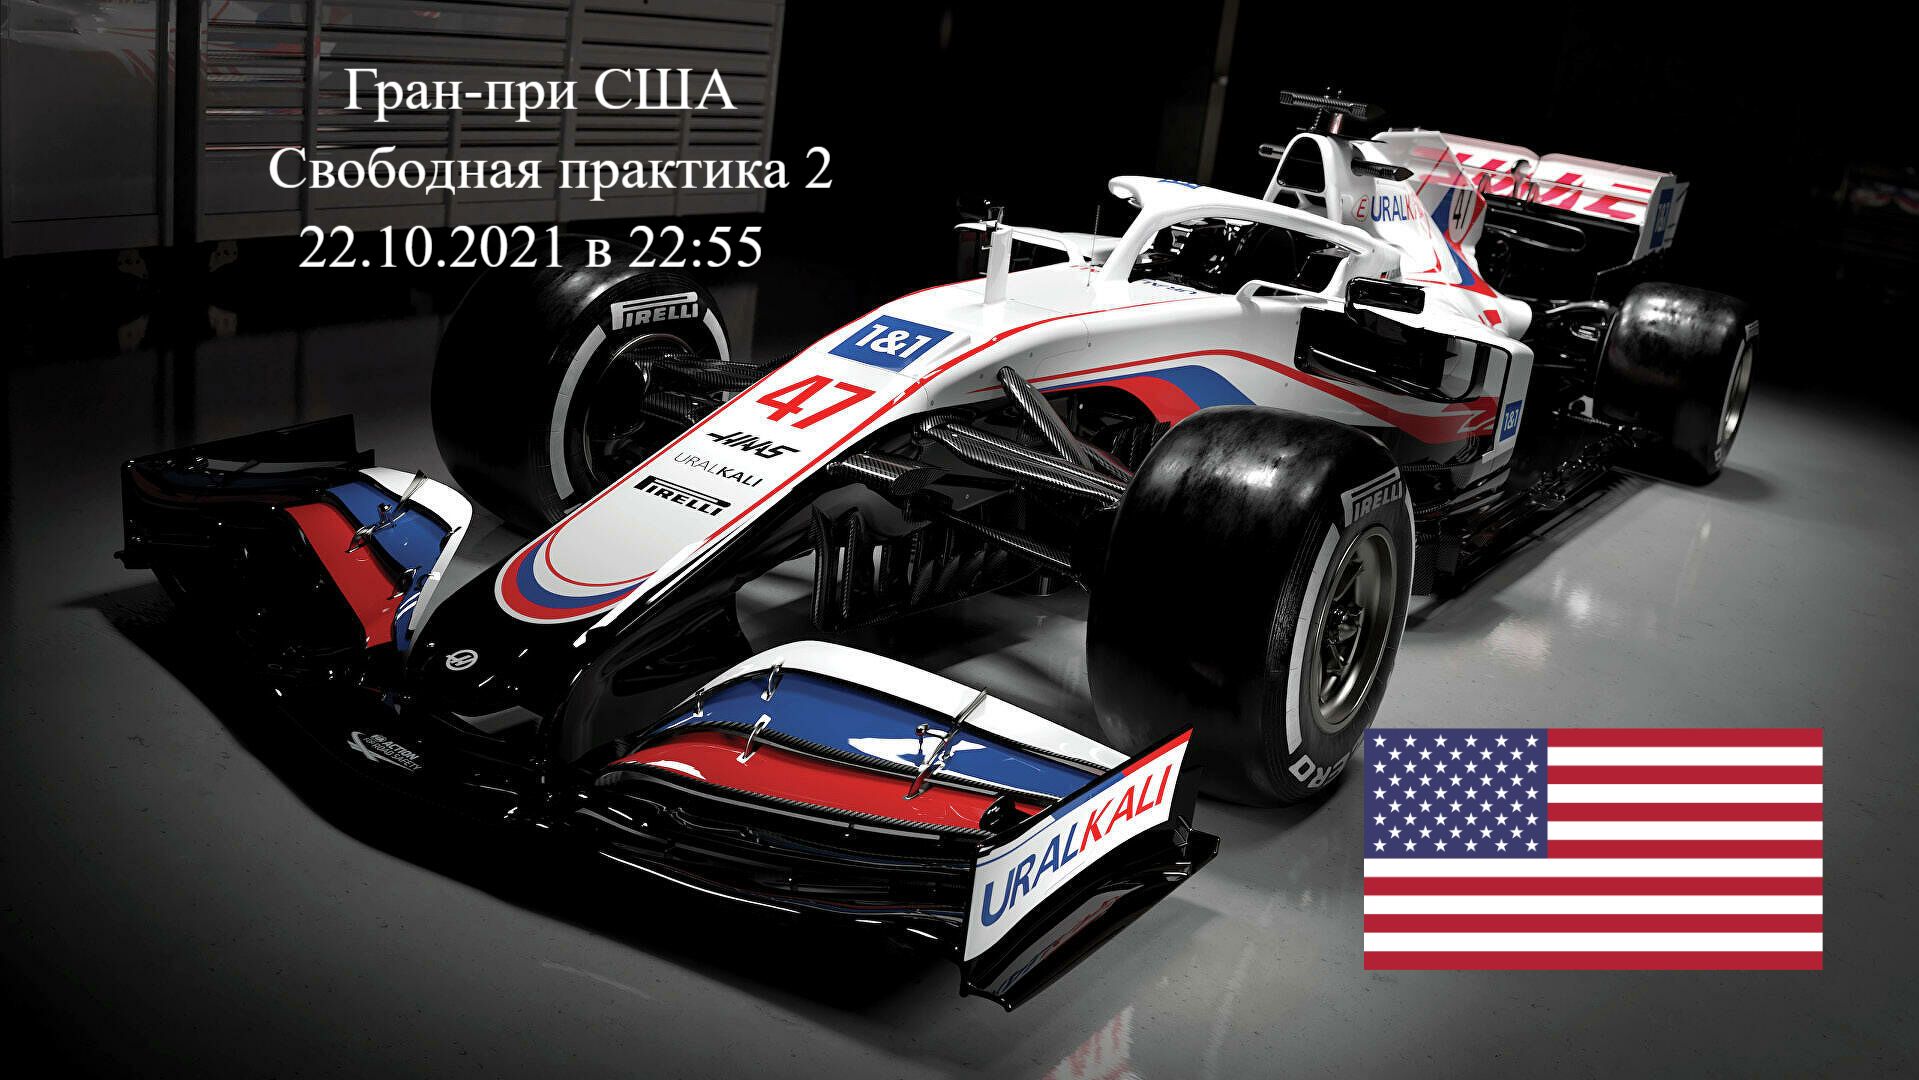 Формула 1 Гран-при США 2021, Свободная практика 2 22.10.2021 смотреть онлайн